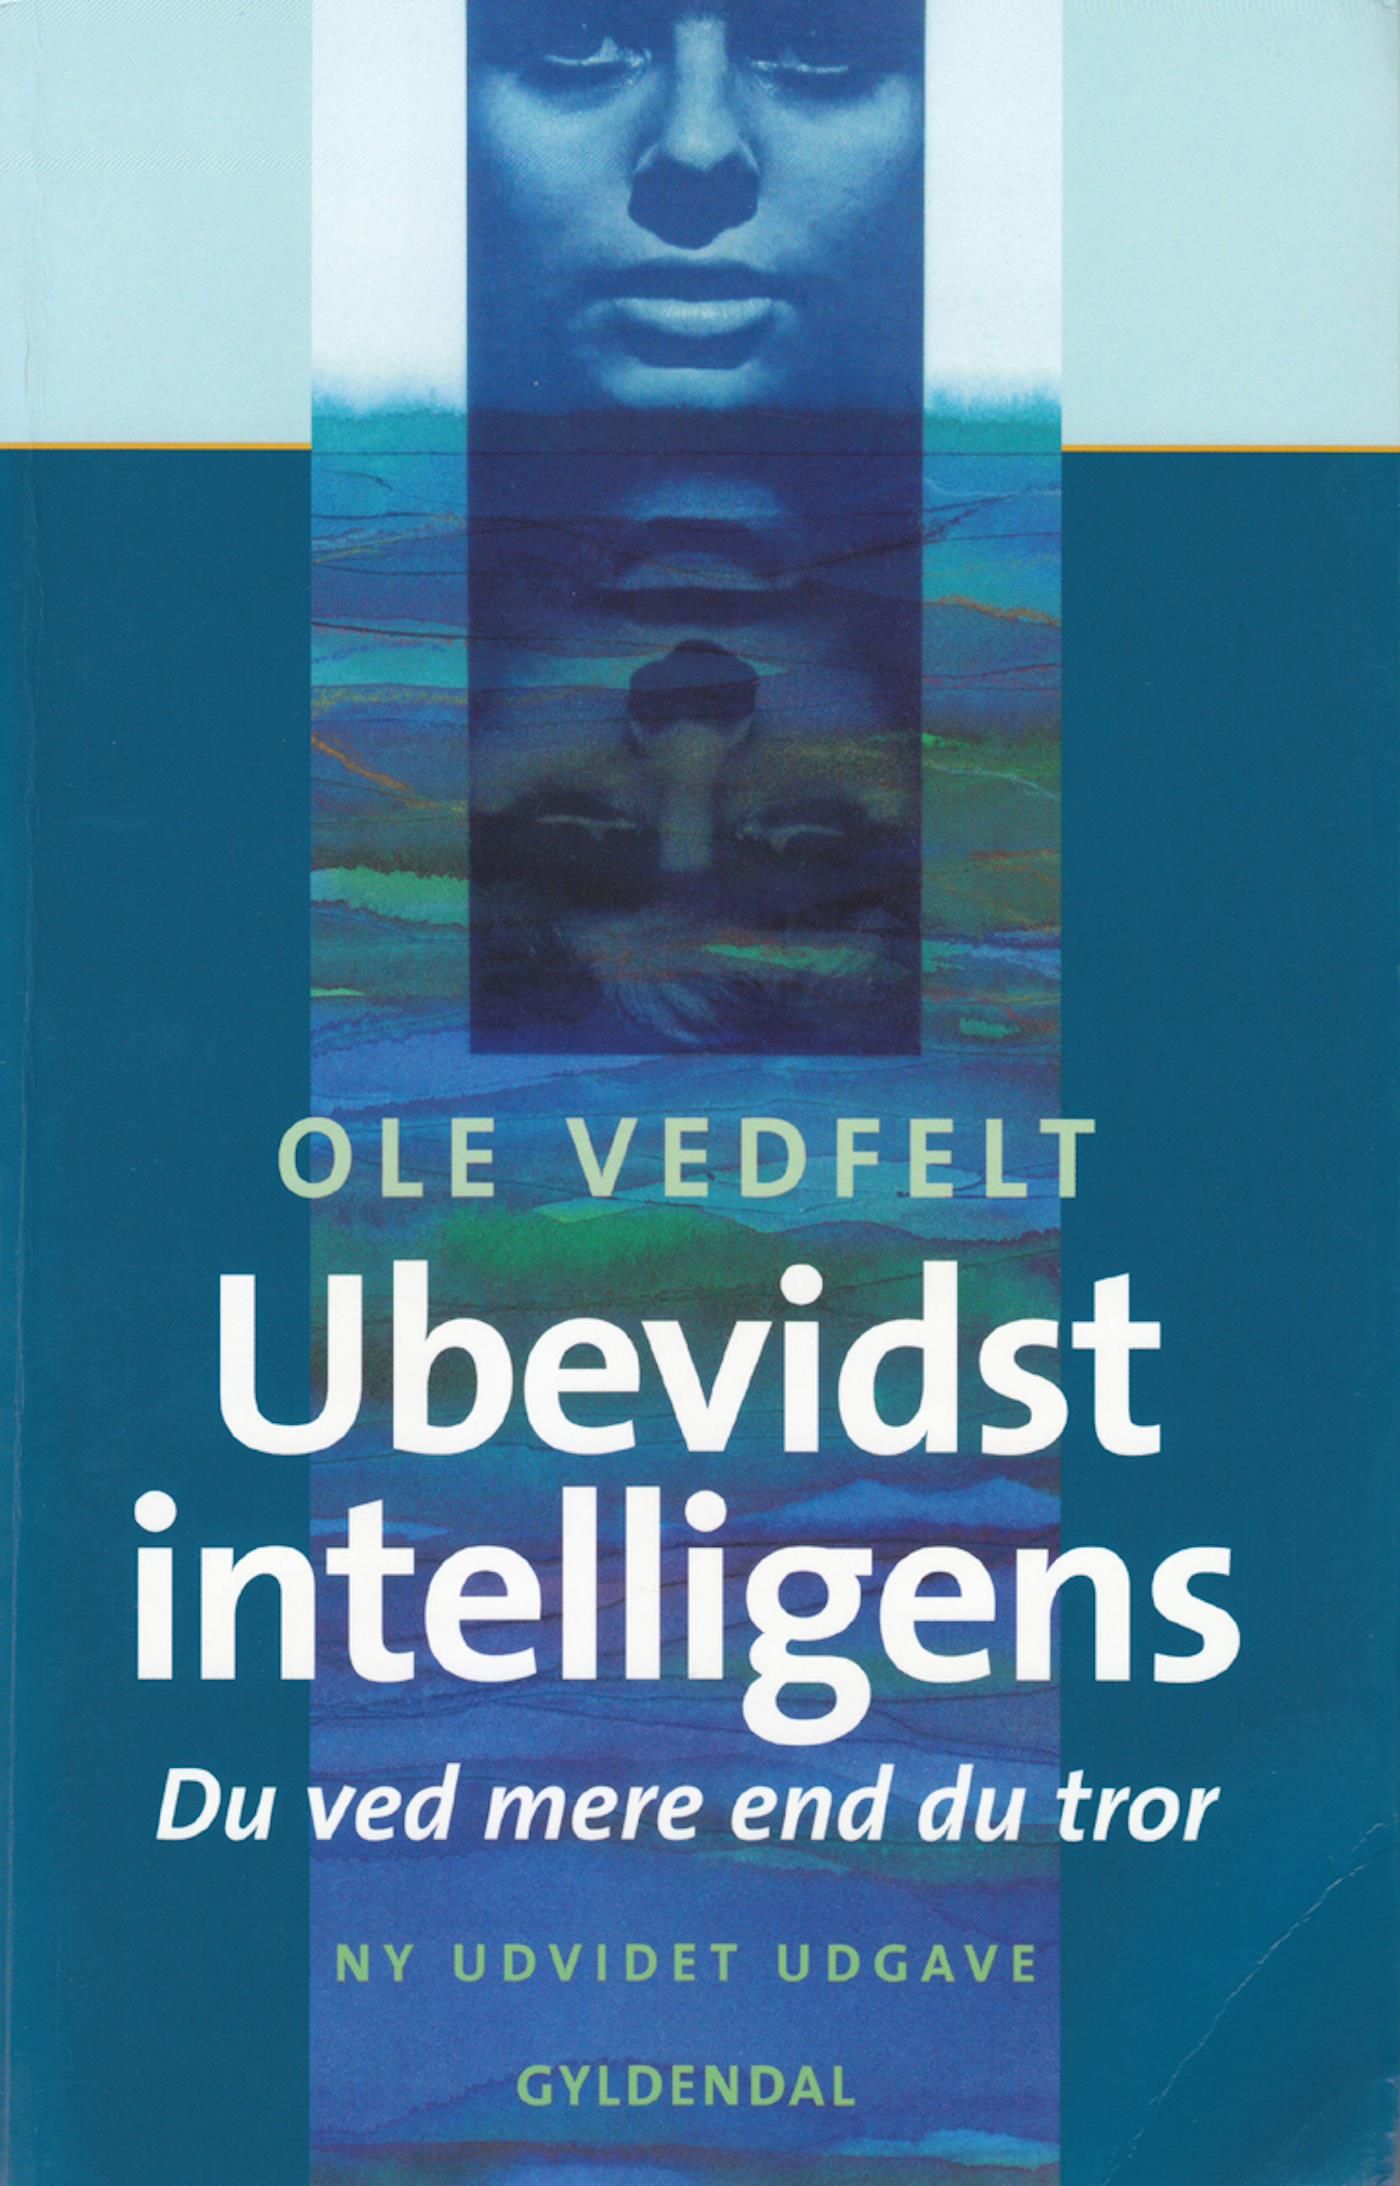 Ubevidst intelligens, e-bog af Ole Vedfelt